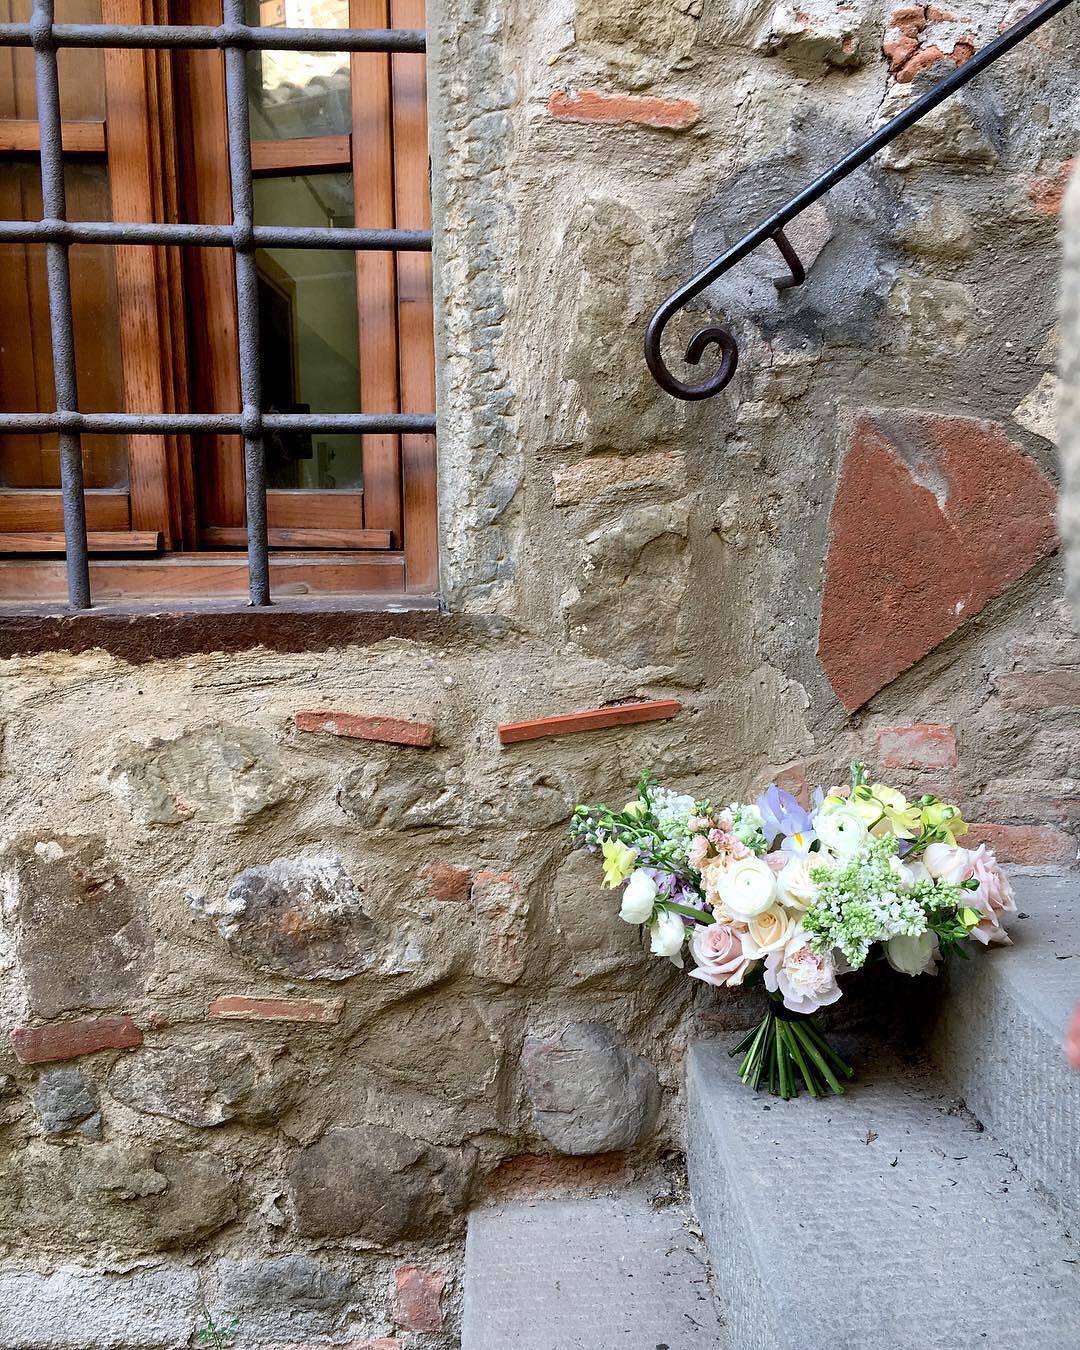 Lungo i viottoli di Villa Barberino è possibile imbattersi in delicati fiori  Ph by @flowergirldiary ️ •
•
•
•